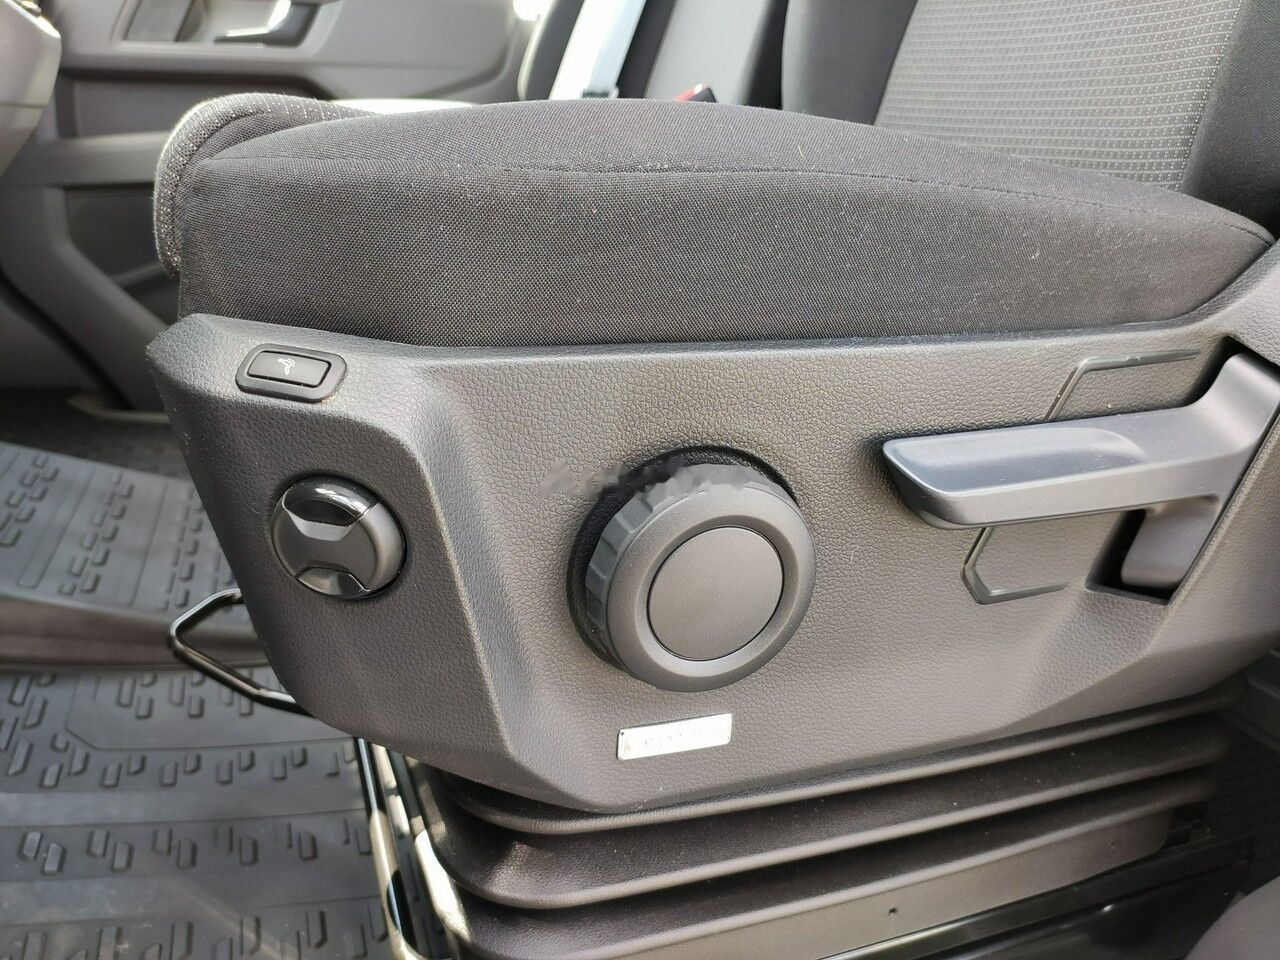 Panel van, Combi van Mercedes-Benz Sprinter: picture 16